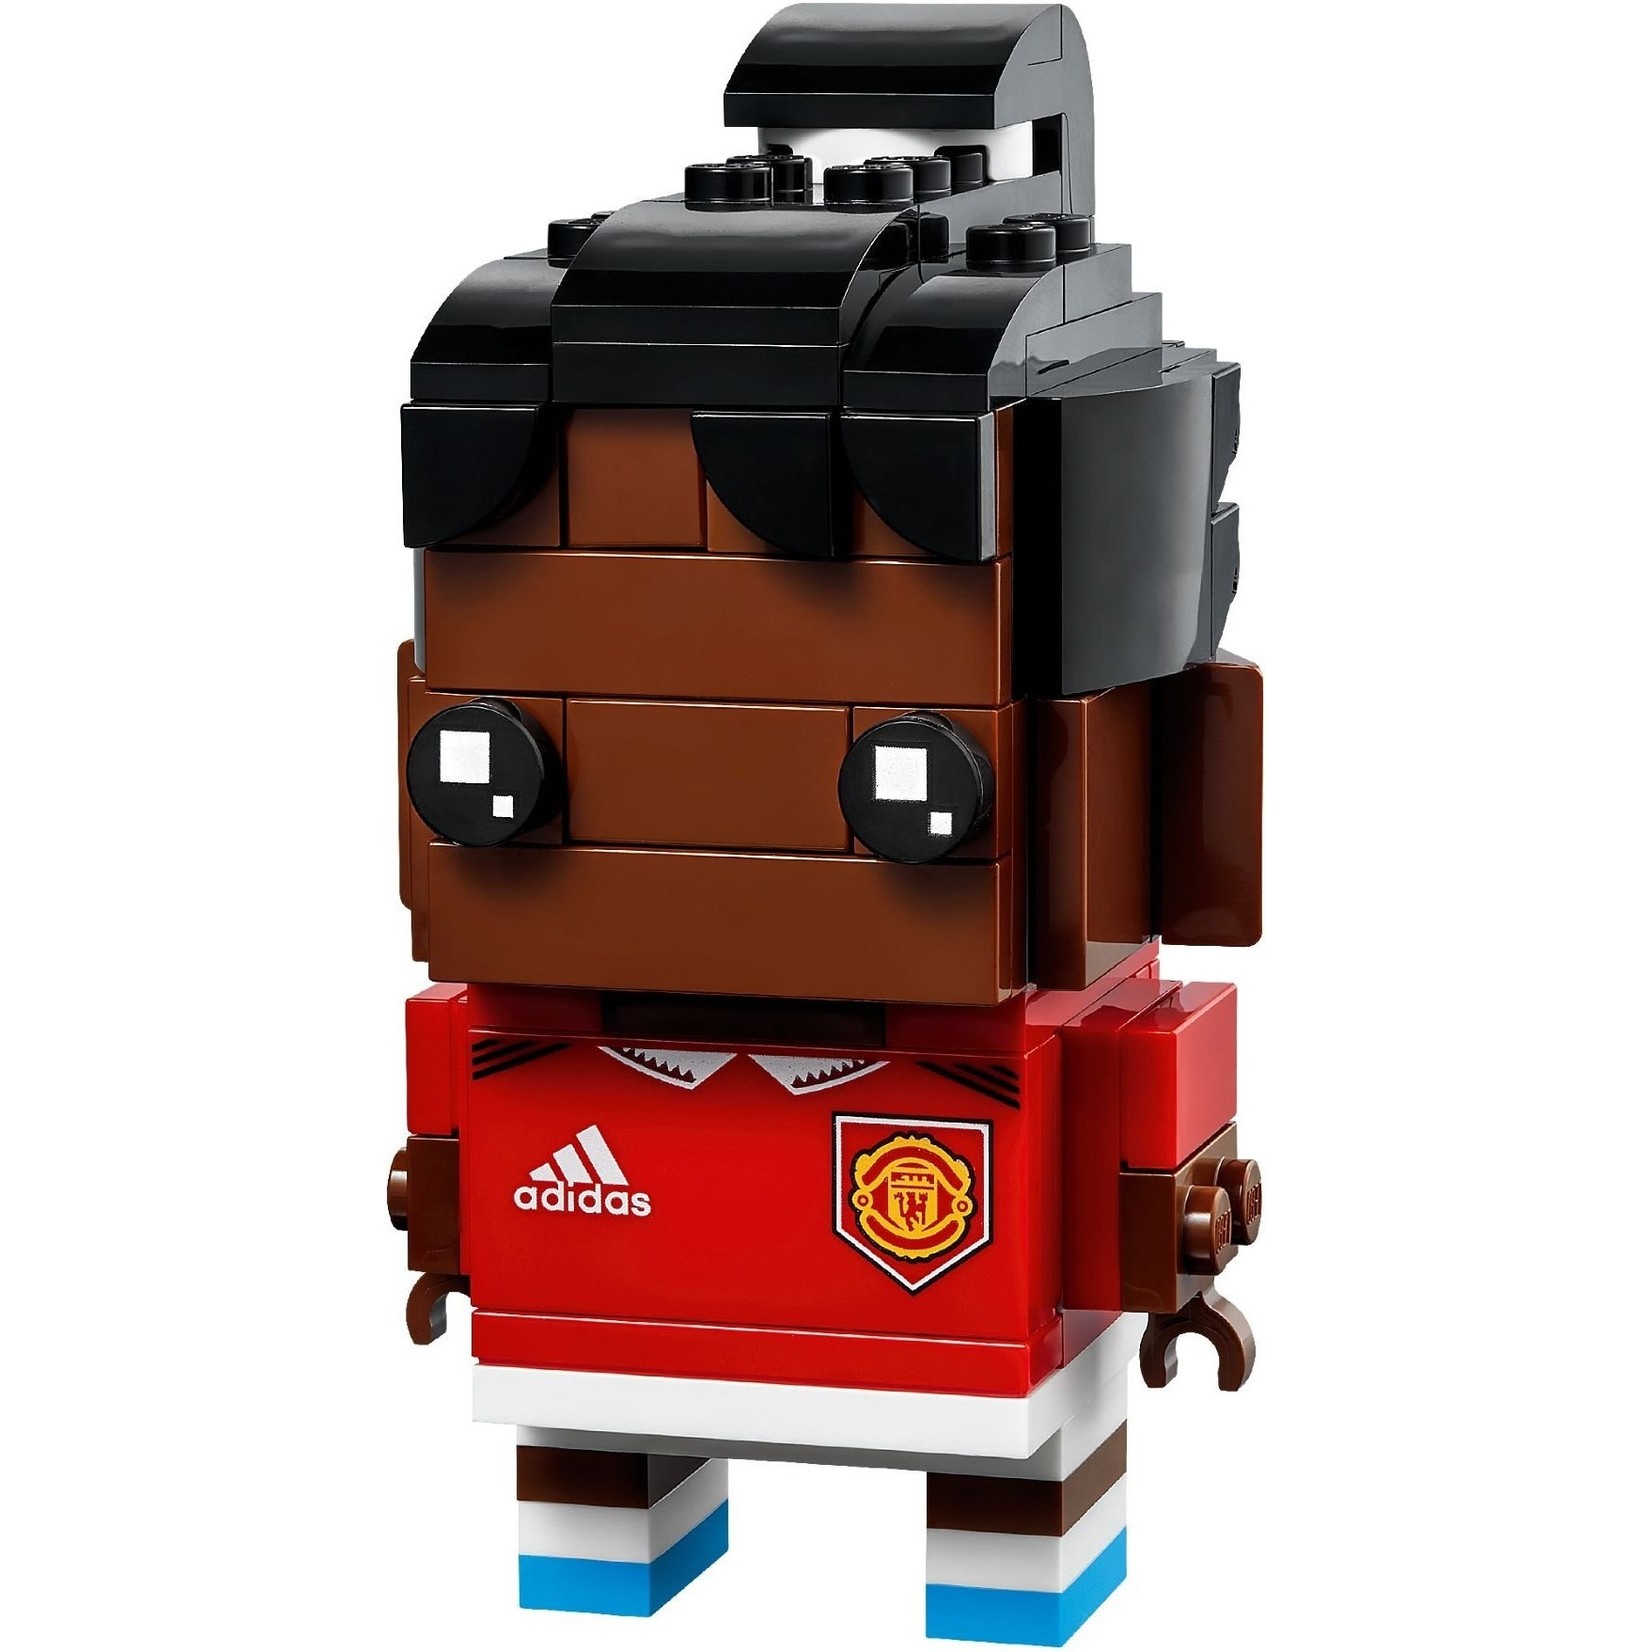 LEGO Maak van mij stenen Manchester United - 40541